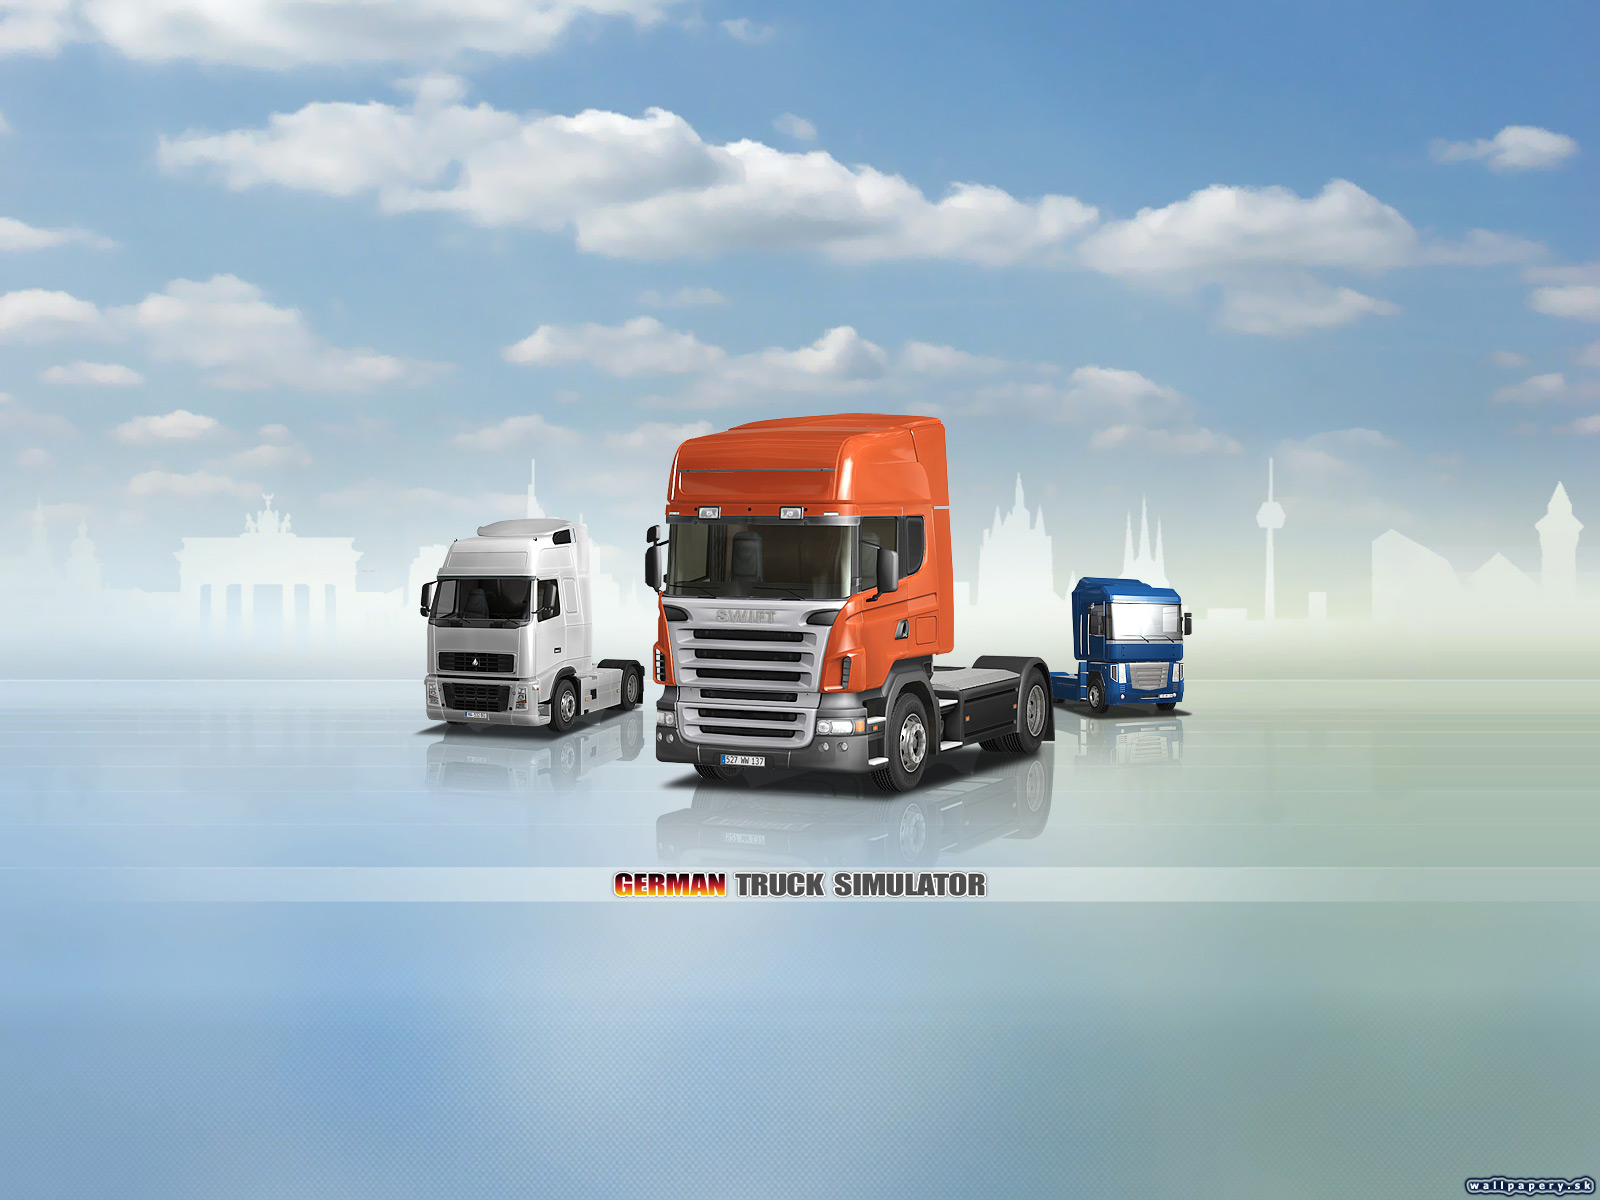 German Truck Simulator - wallpaper 2